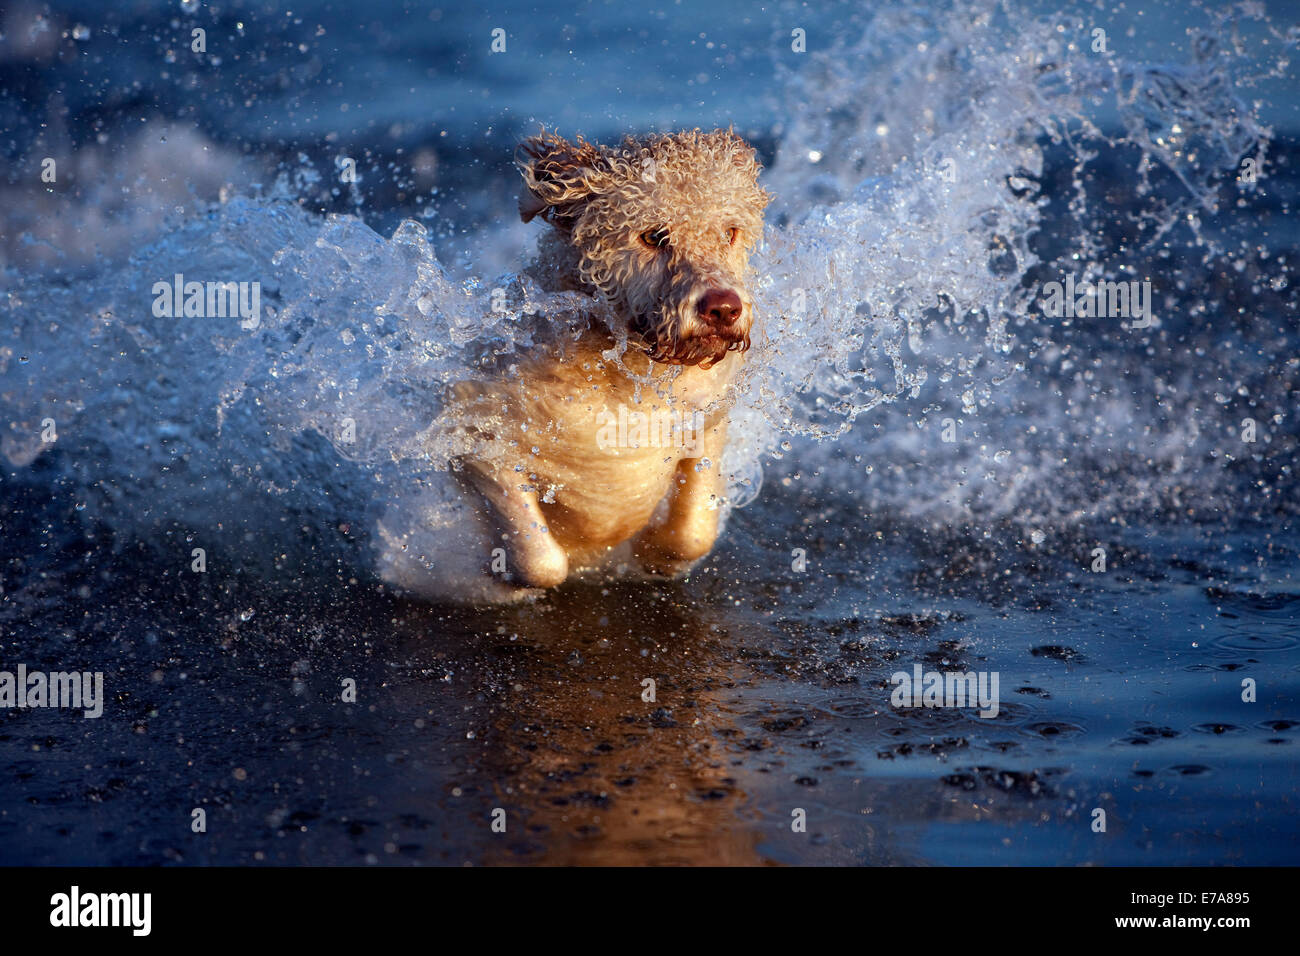 A Portuguese Water Dog splashing through water Stock Photo